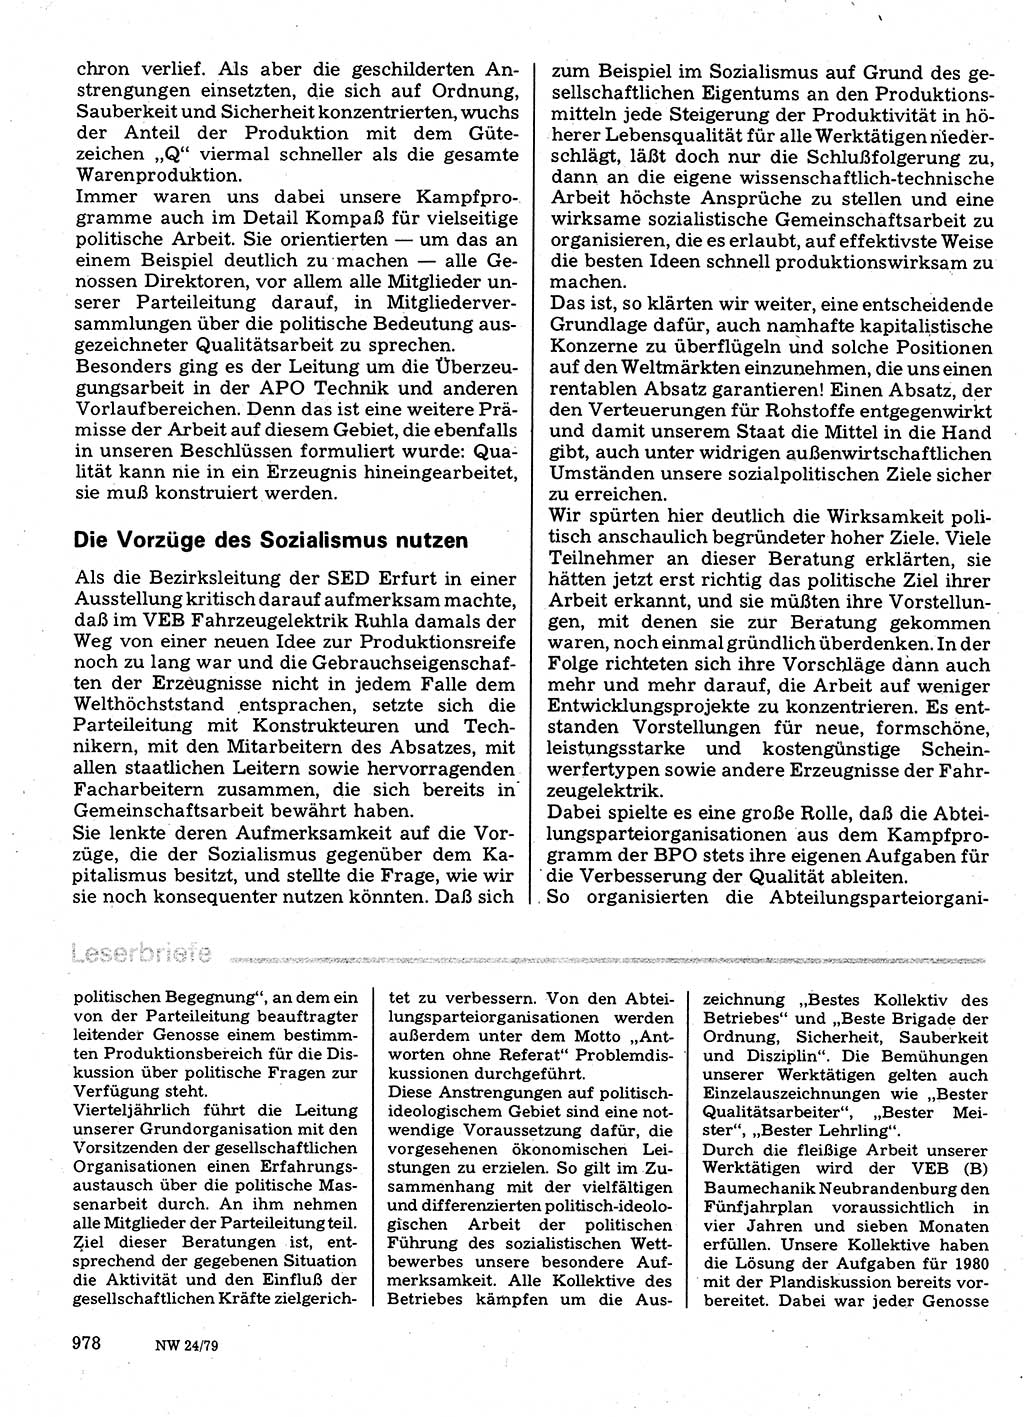 Neuer Weg (NW), Organ des Zentralkomitees (ZK) der SED (Sozialistische Einheitspartei Deutschlands) für Fragen des Parteilebens, 34. Jahrgang [Deutsche Demokratische Republik (DDR)] 1979, Seite 978 (NW ZK SED DDR 1979, S. 978)